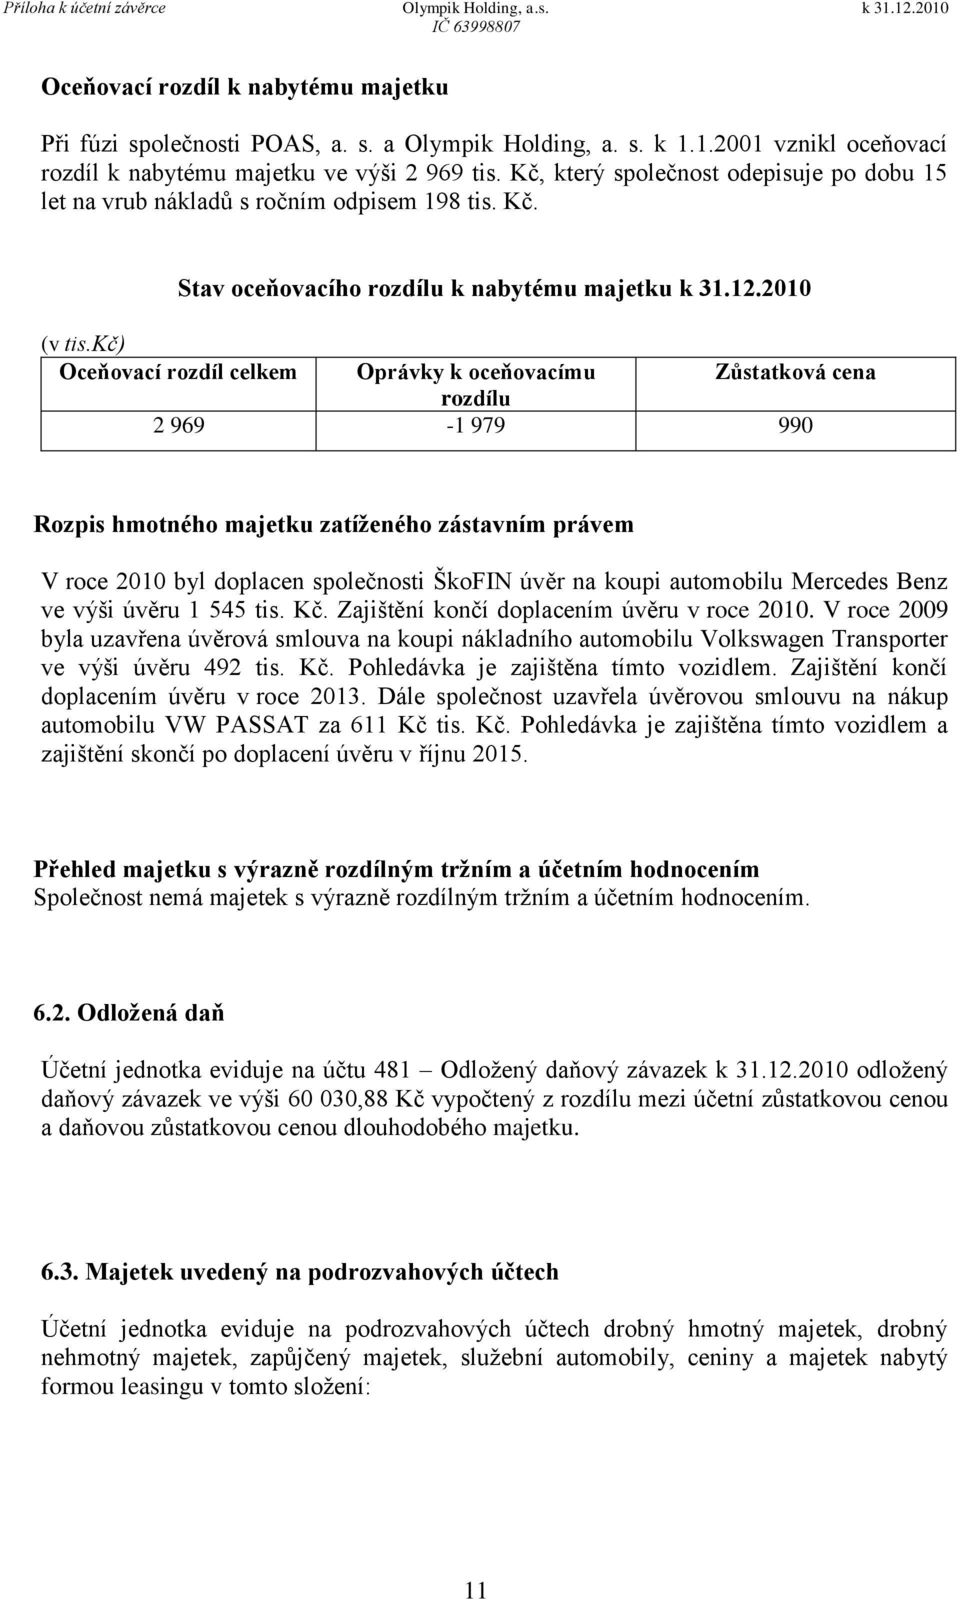 kč) Oceňovací rozdíl celkem Oprávky k oceňovacímu Zůstatková cena rozdílu 2 969-1 979 990 Rozpis hmotného majetku zatíženého zástavním právem V roce 2010 byl doplacen společnosti ŠkoFIN úvěr na koupi